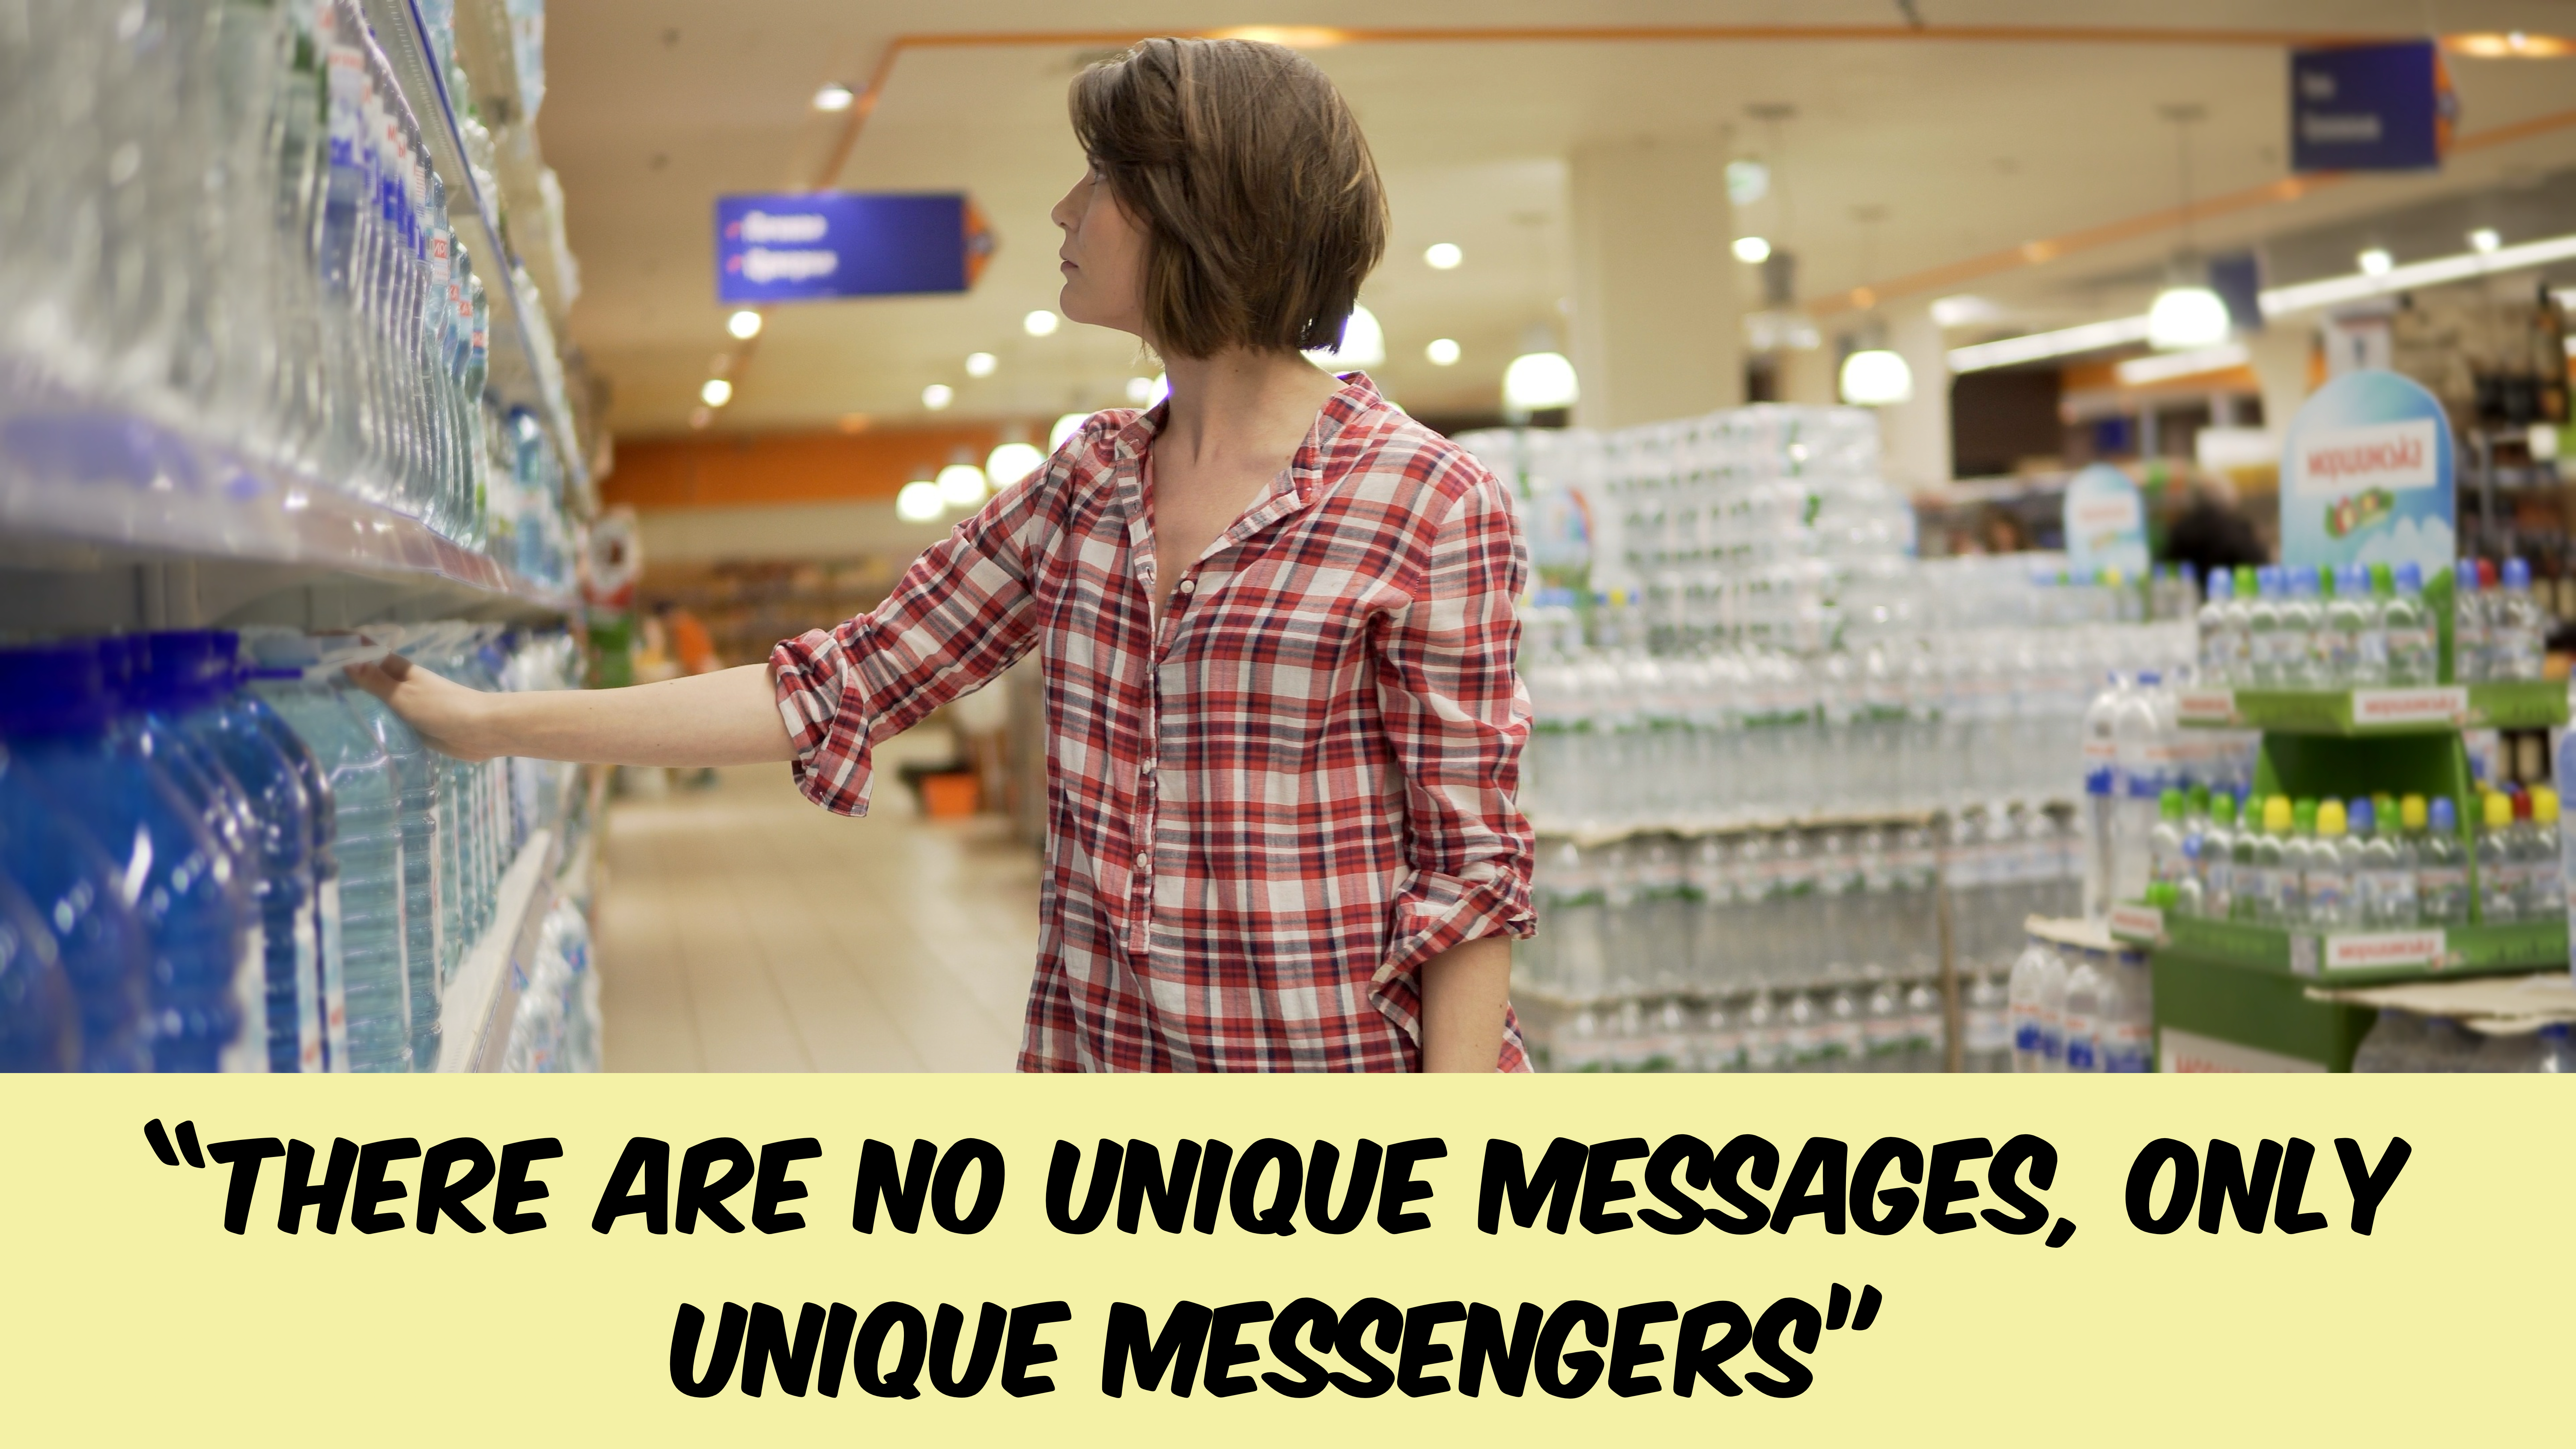 Unique Messengers